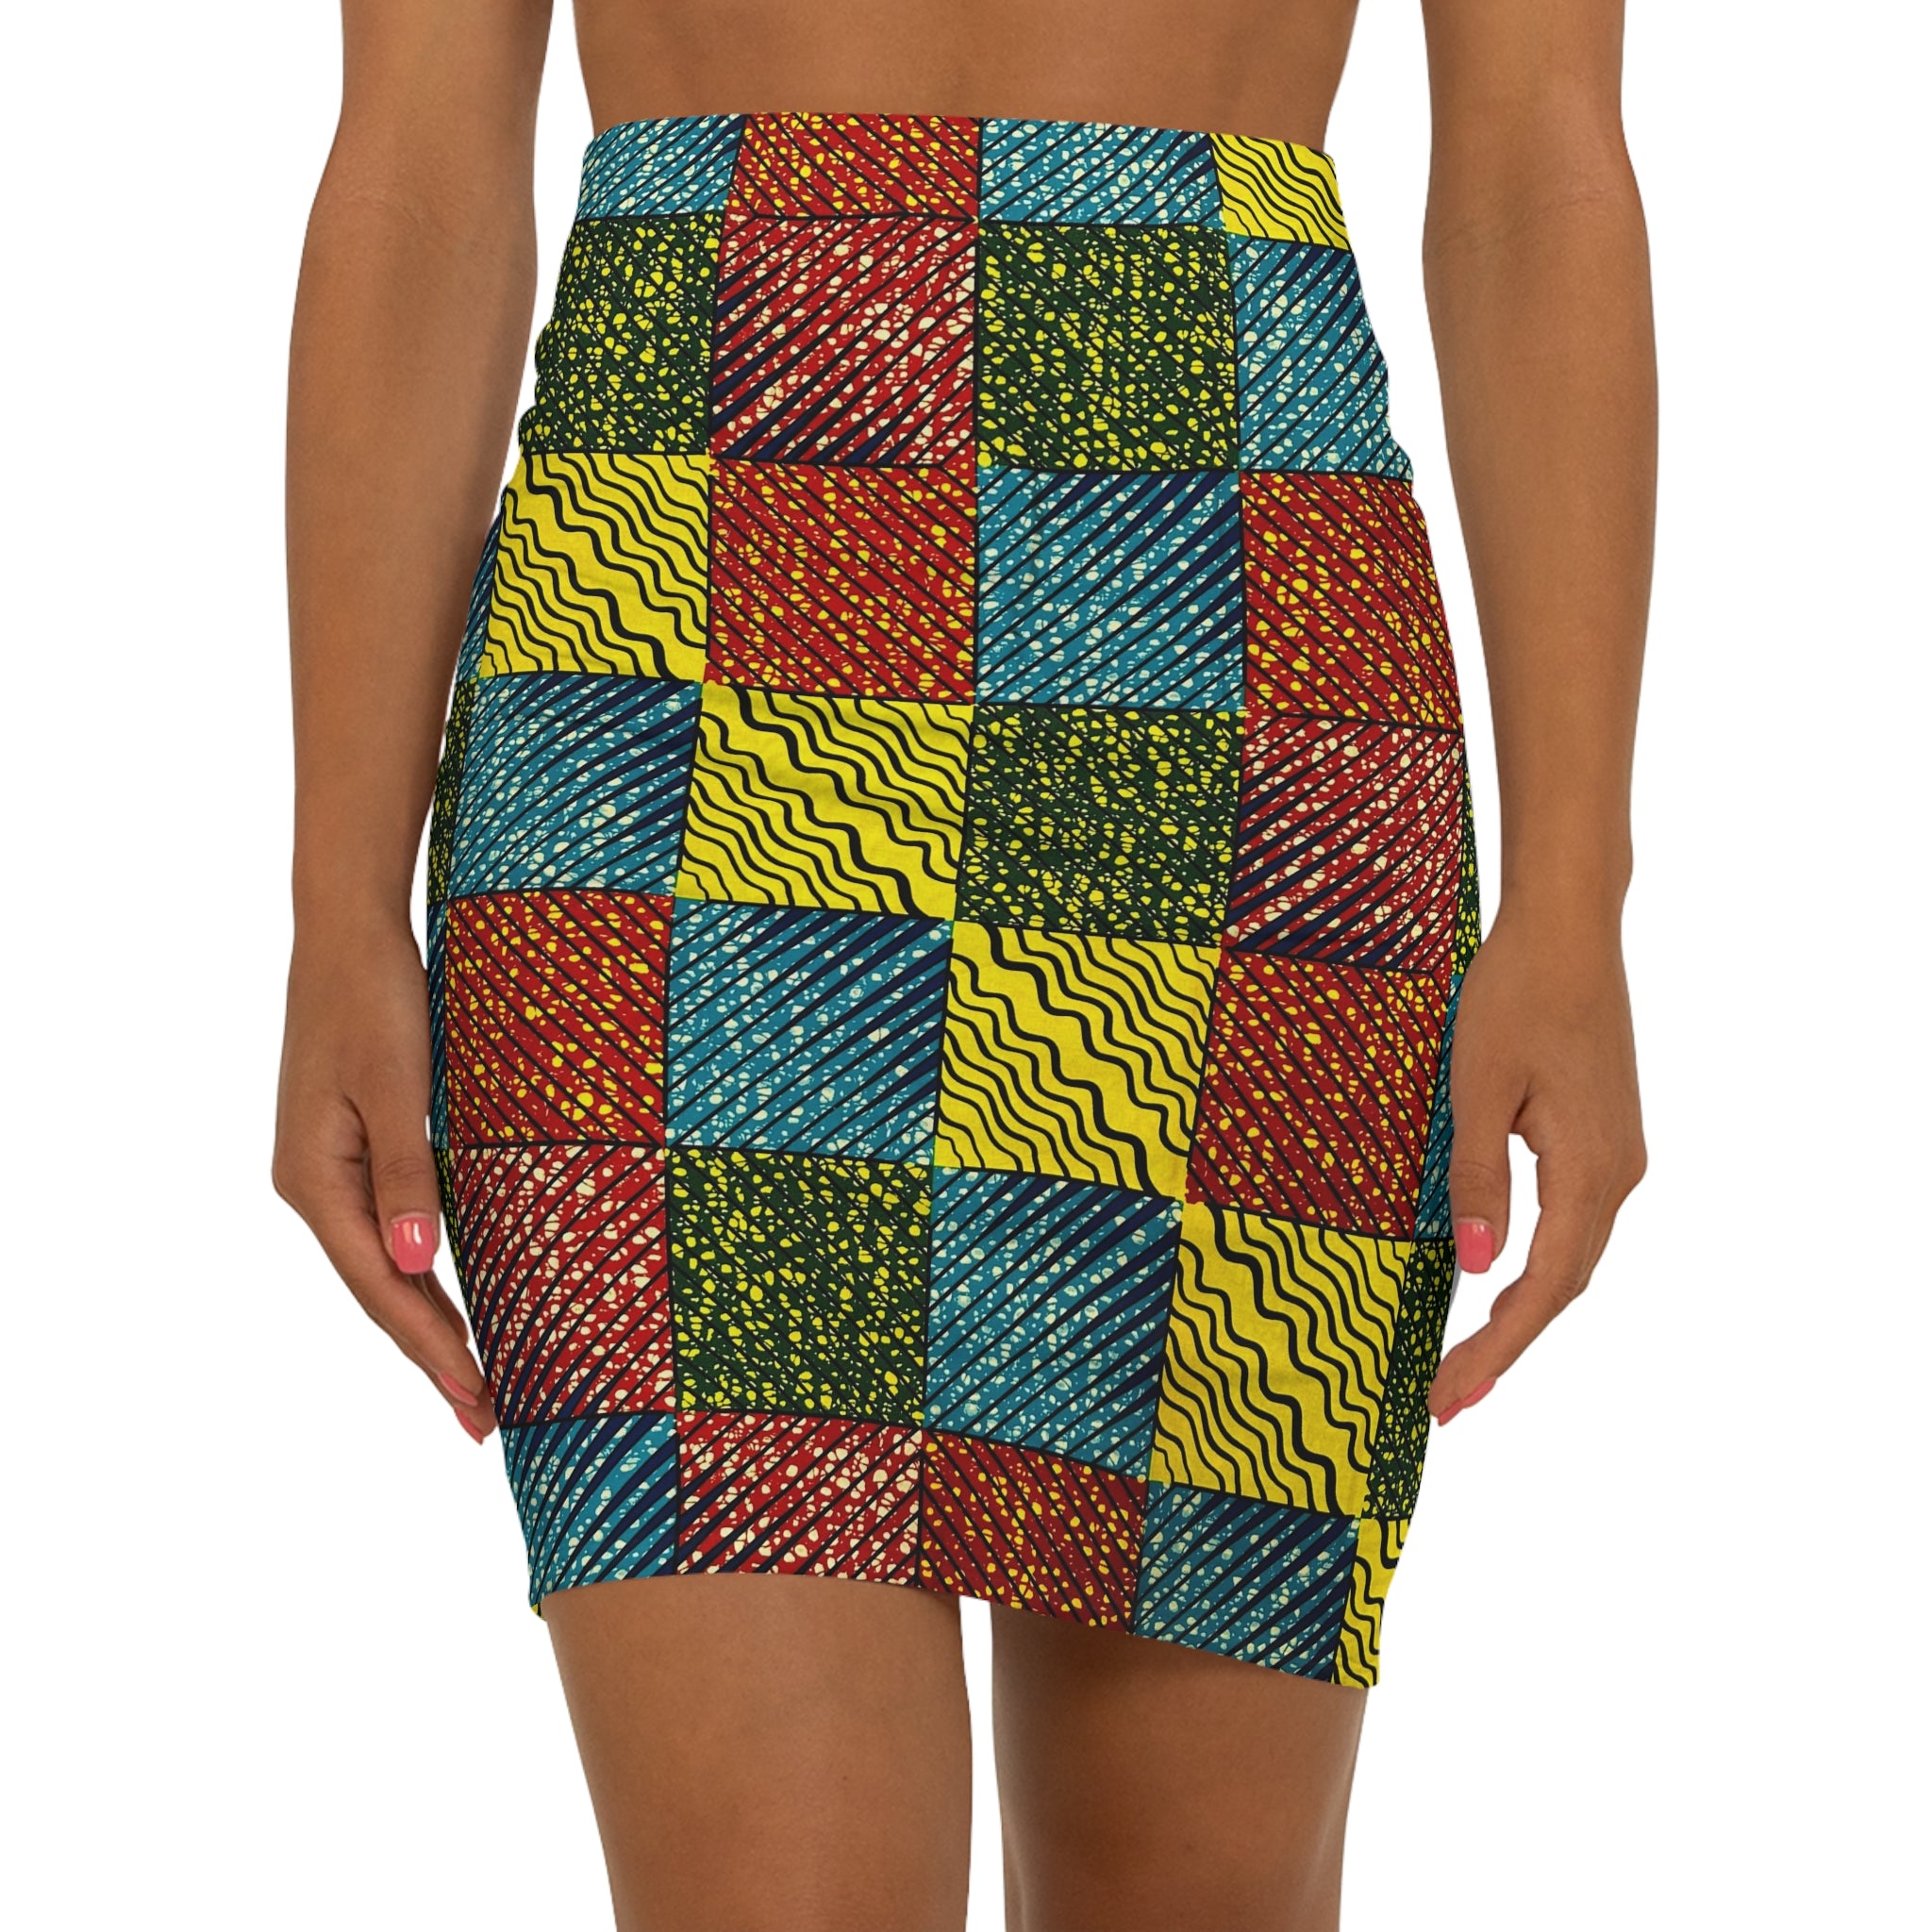 Wavy Grids: Exquisite African Print Fabric - 100% Premium Cotton